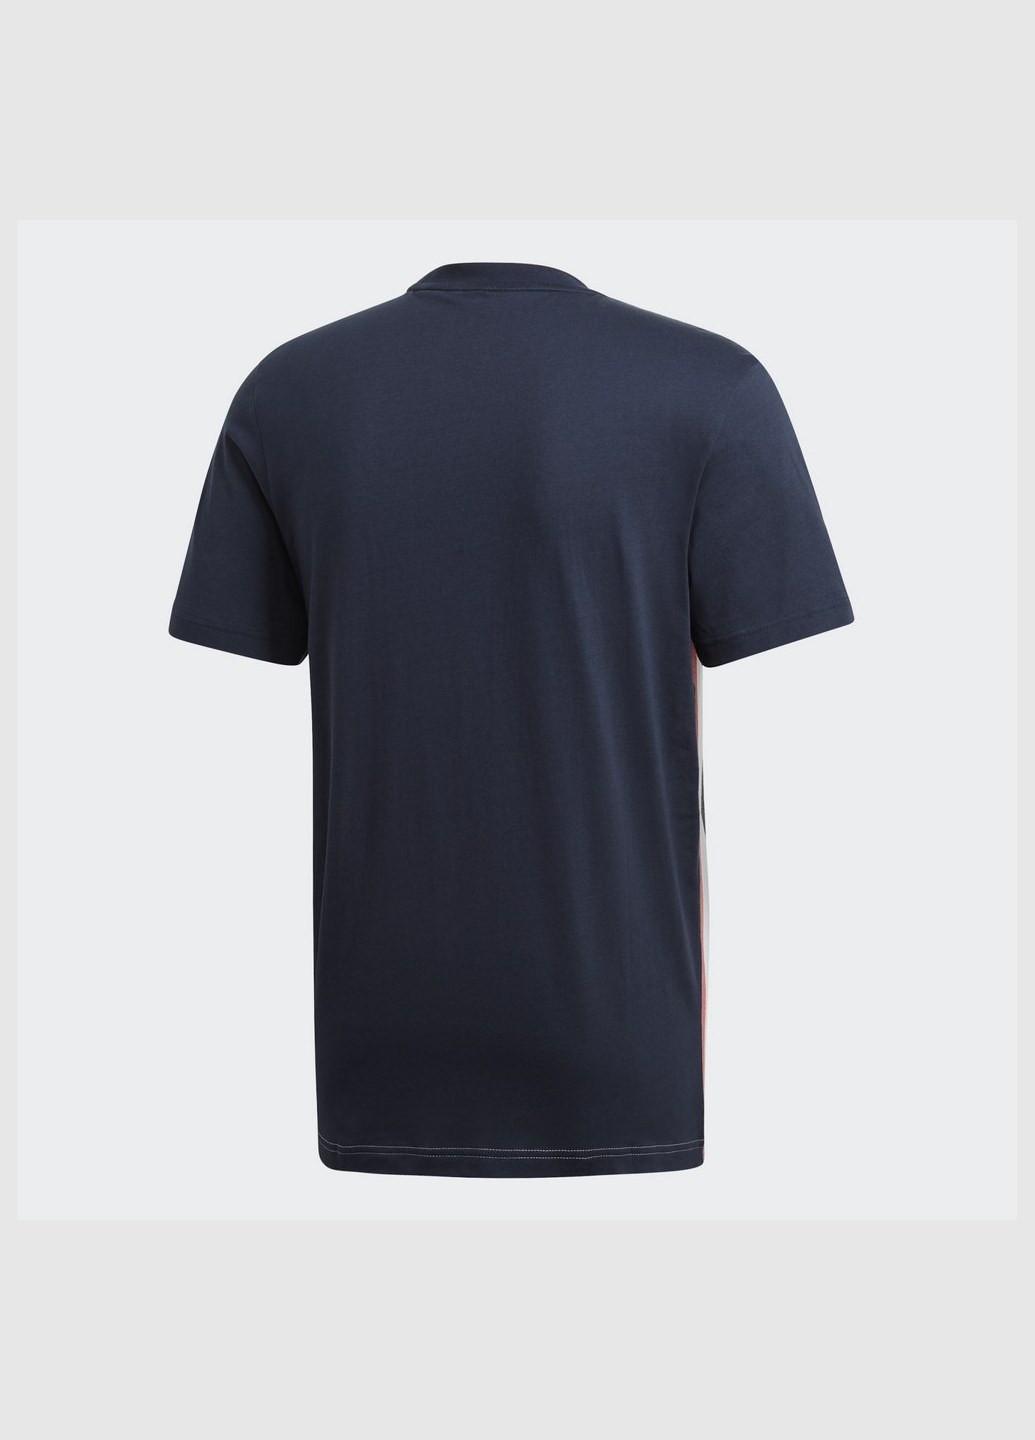 Комбинированная мужская футболка must haves fi4033 adidas